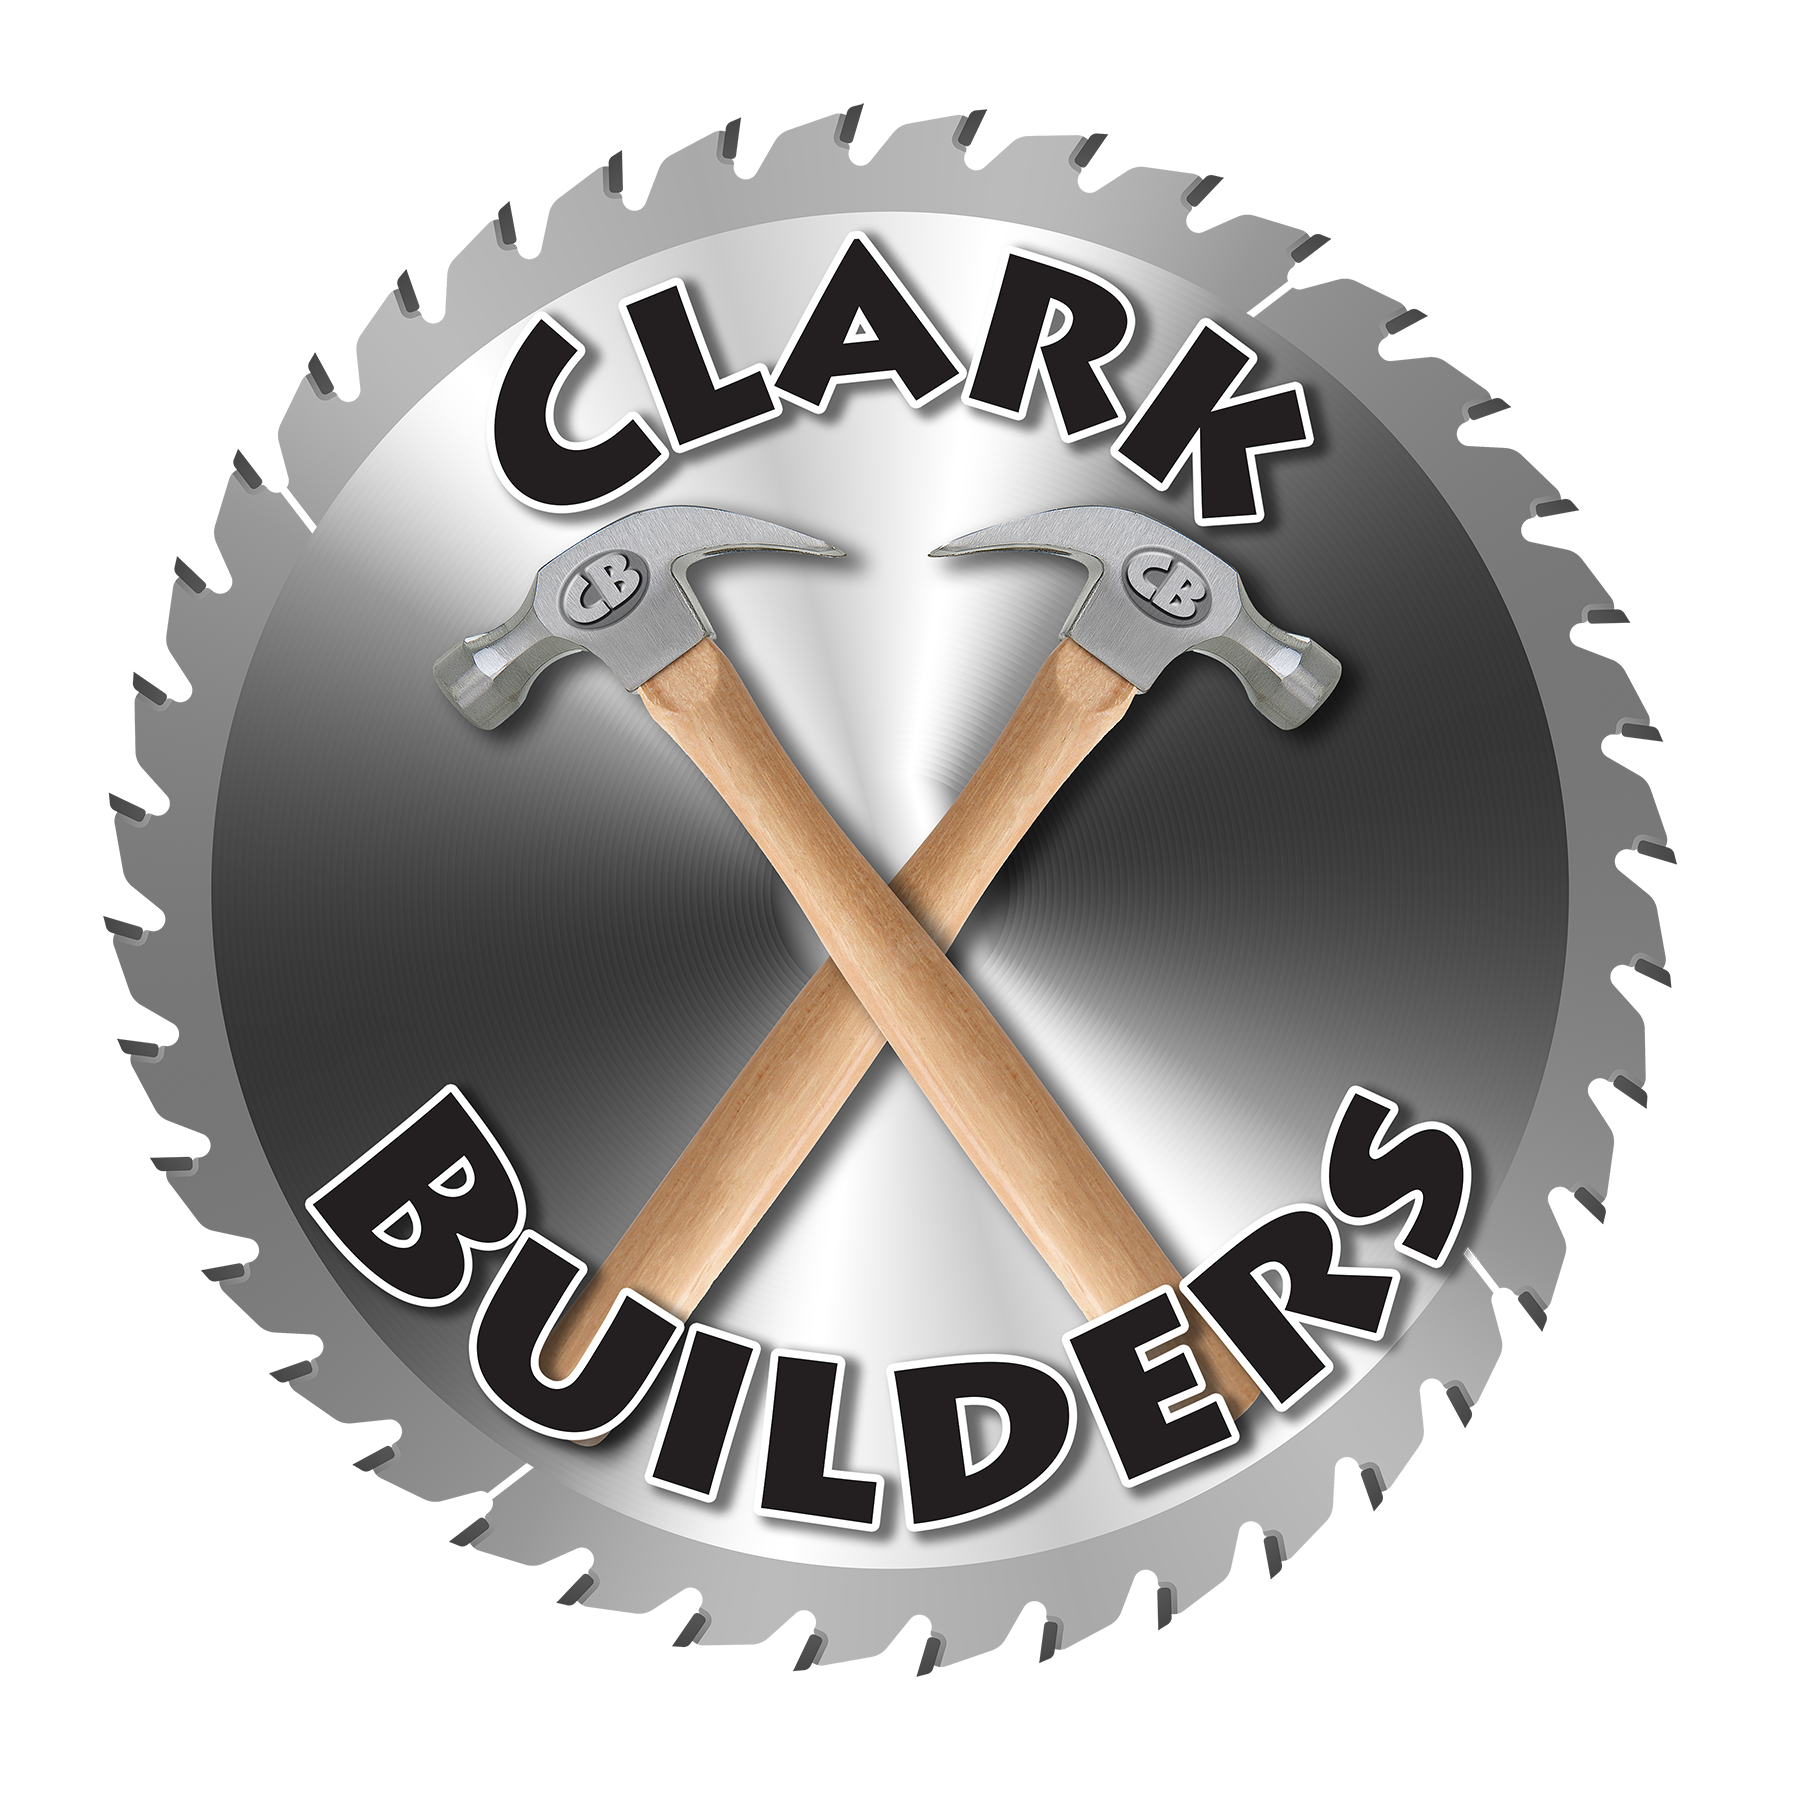 Clark Builders logo